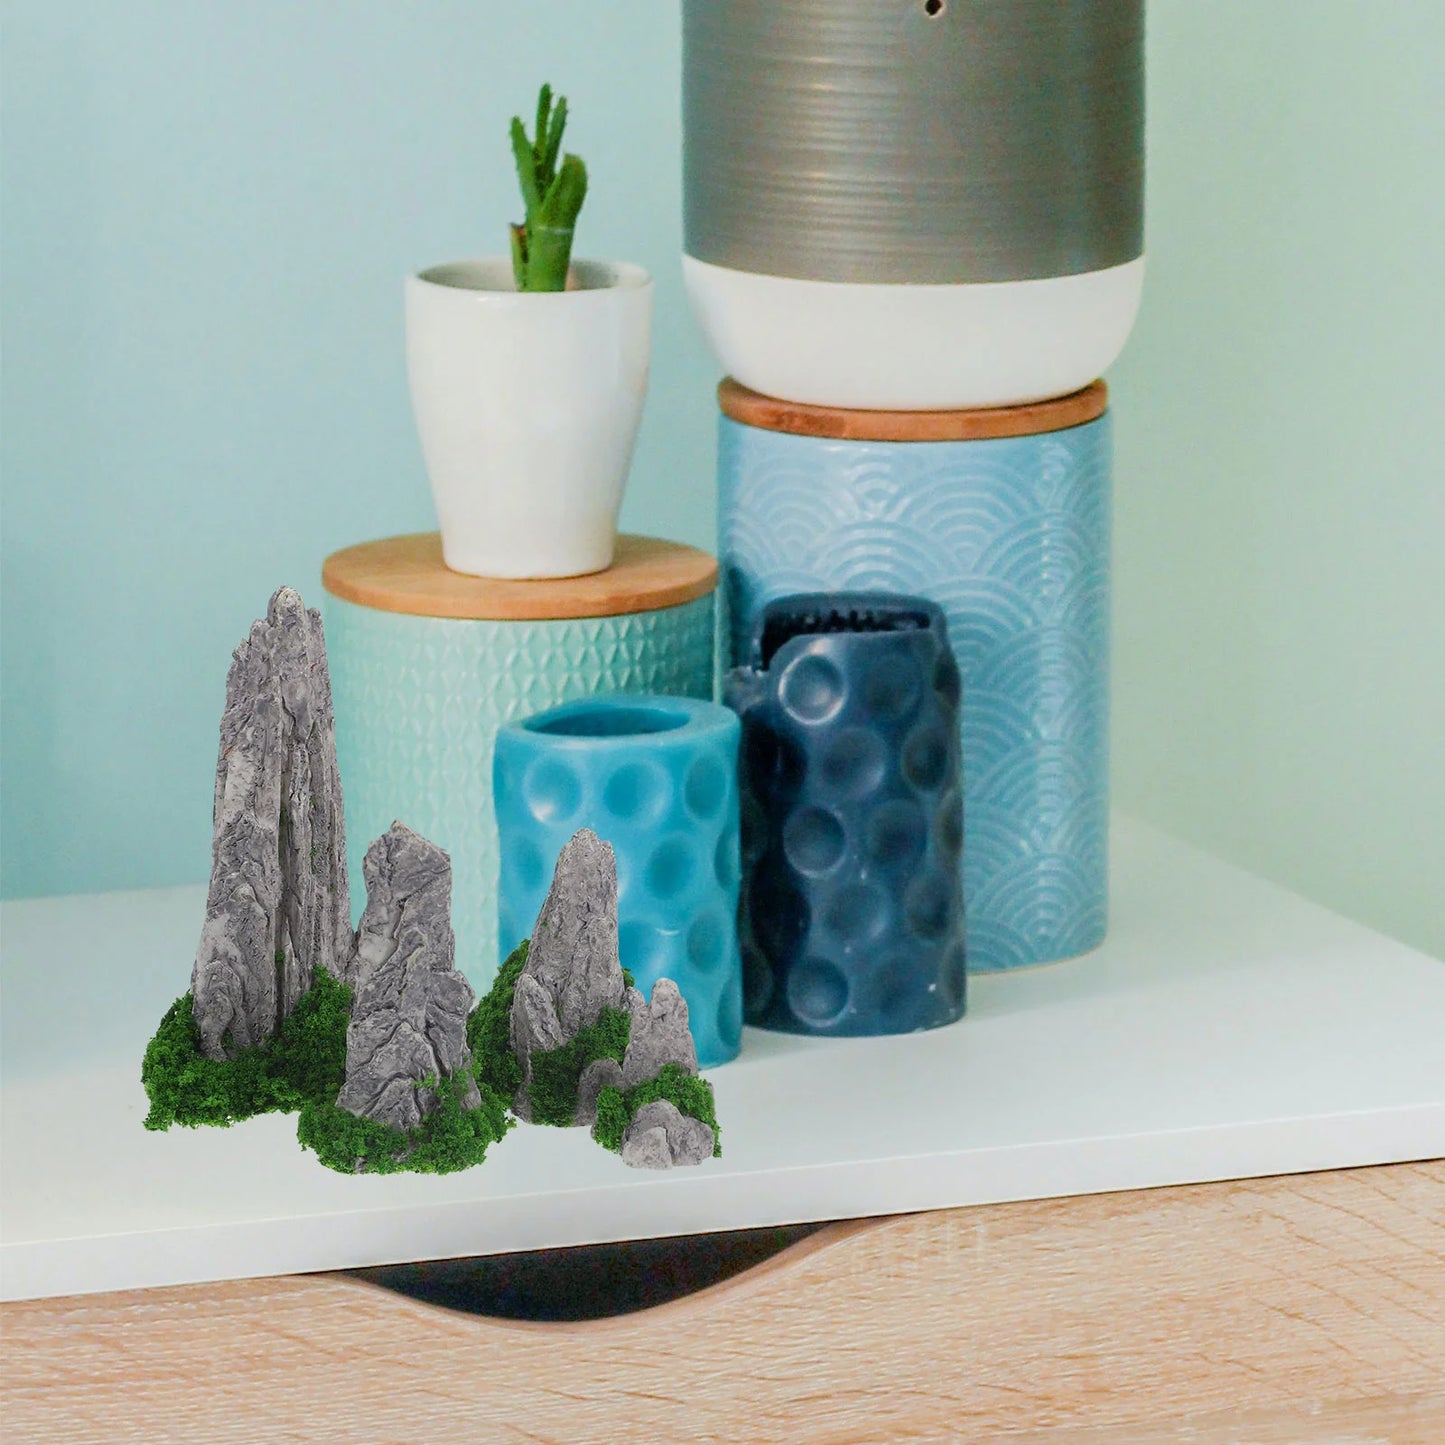 8 PCS Decoración Micro paisajismo jardín al aire libre Mini ornamento de rocas delicadas decoración del hogar